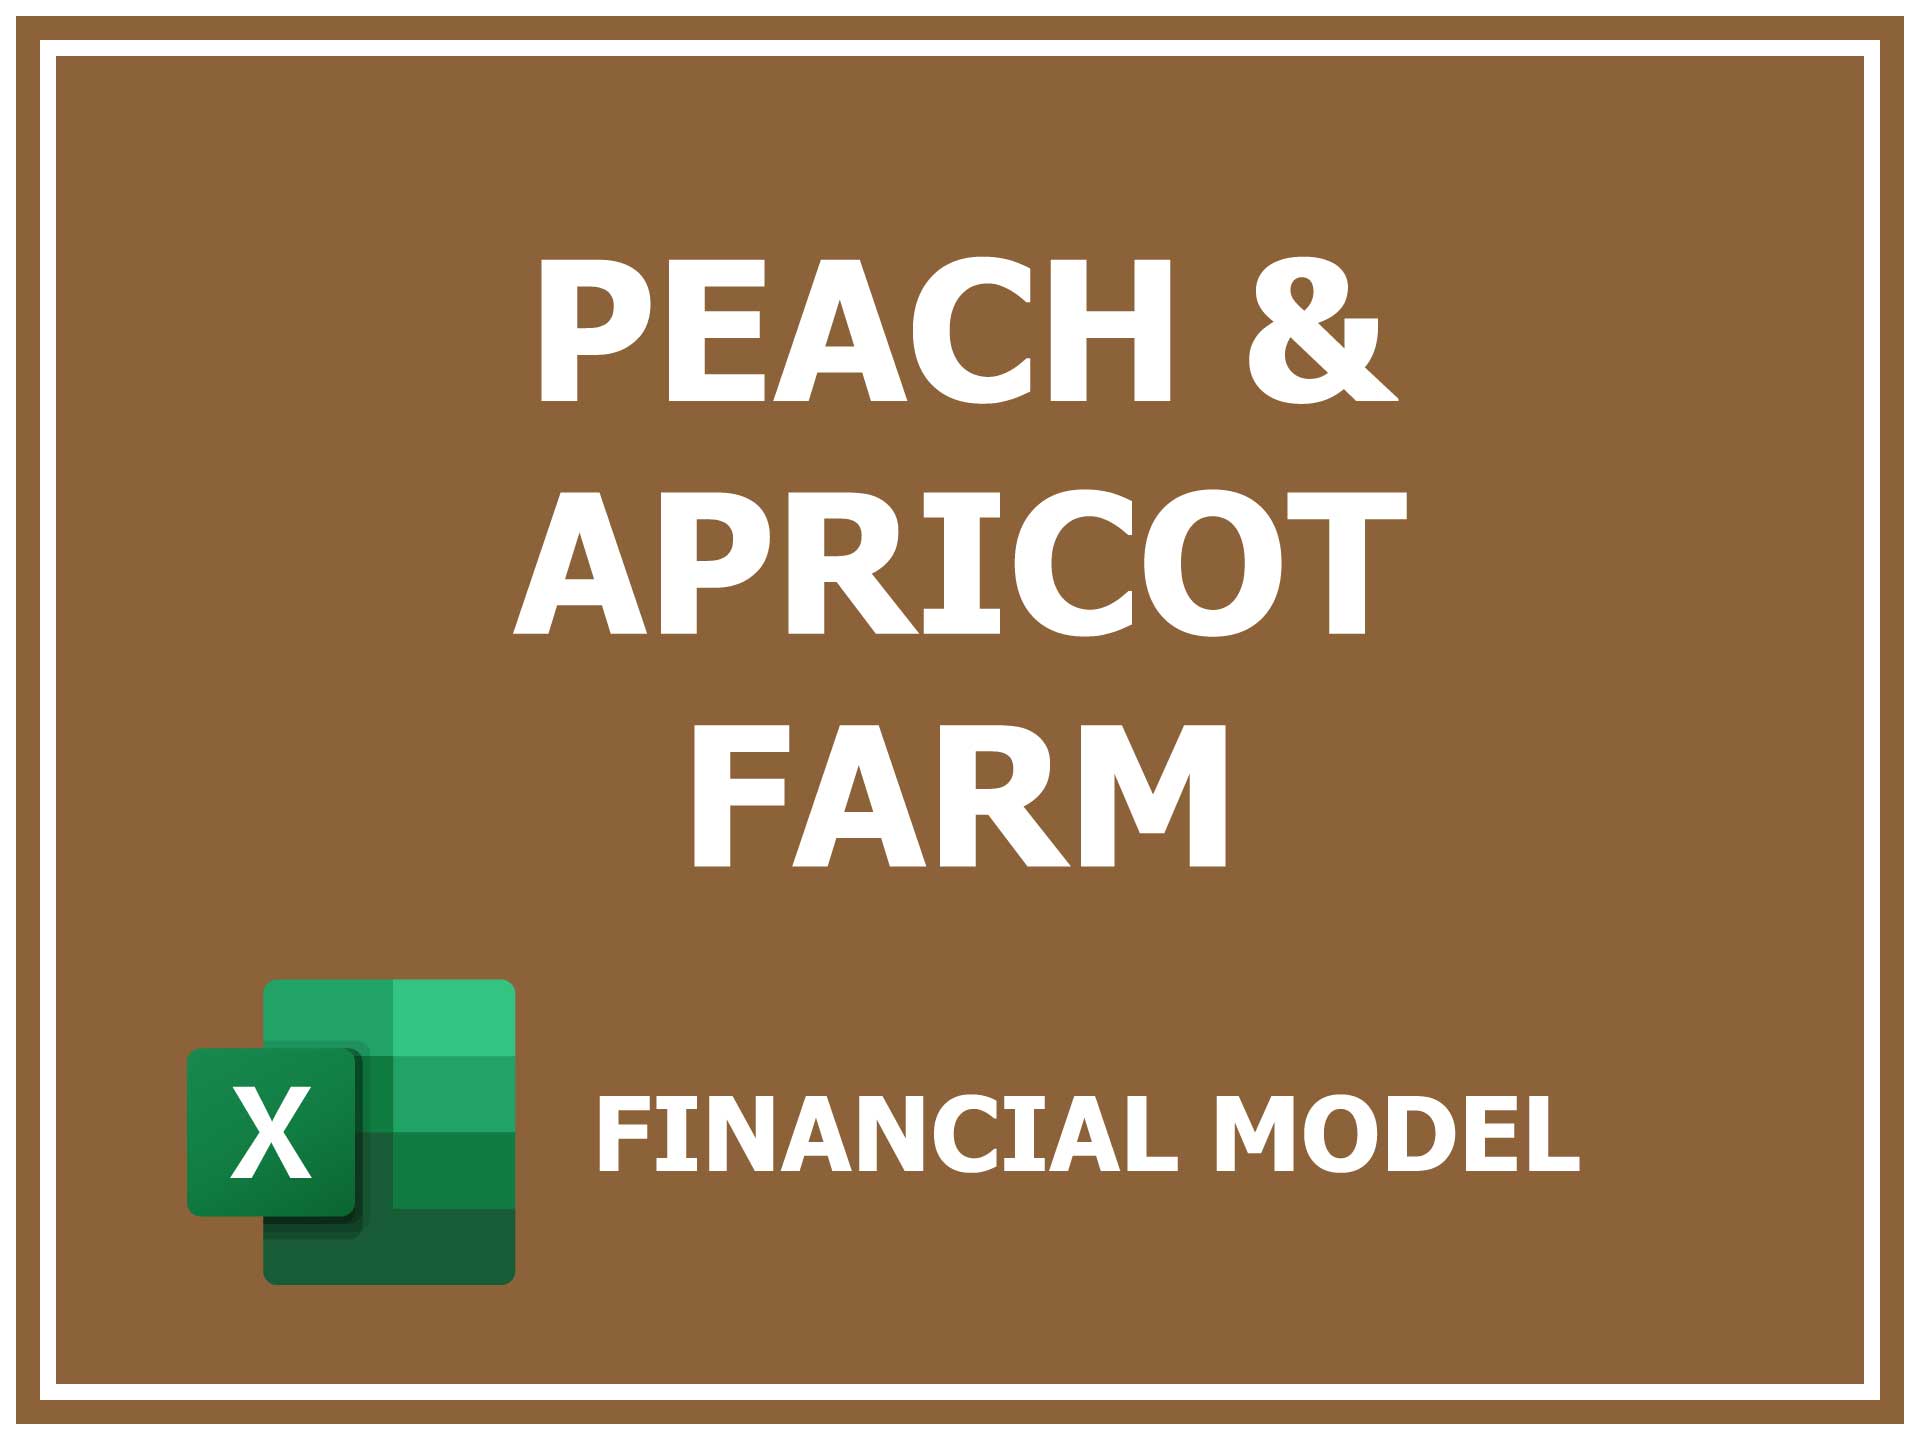 Peach & Apricot Farm